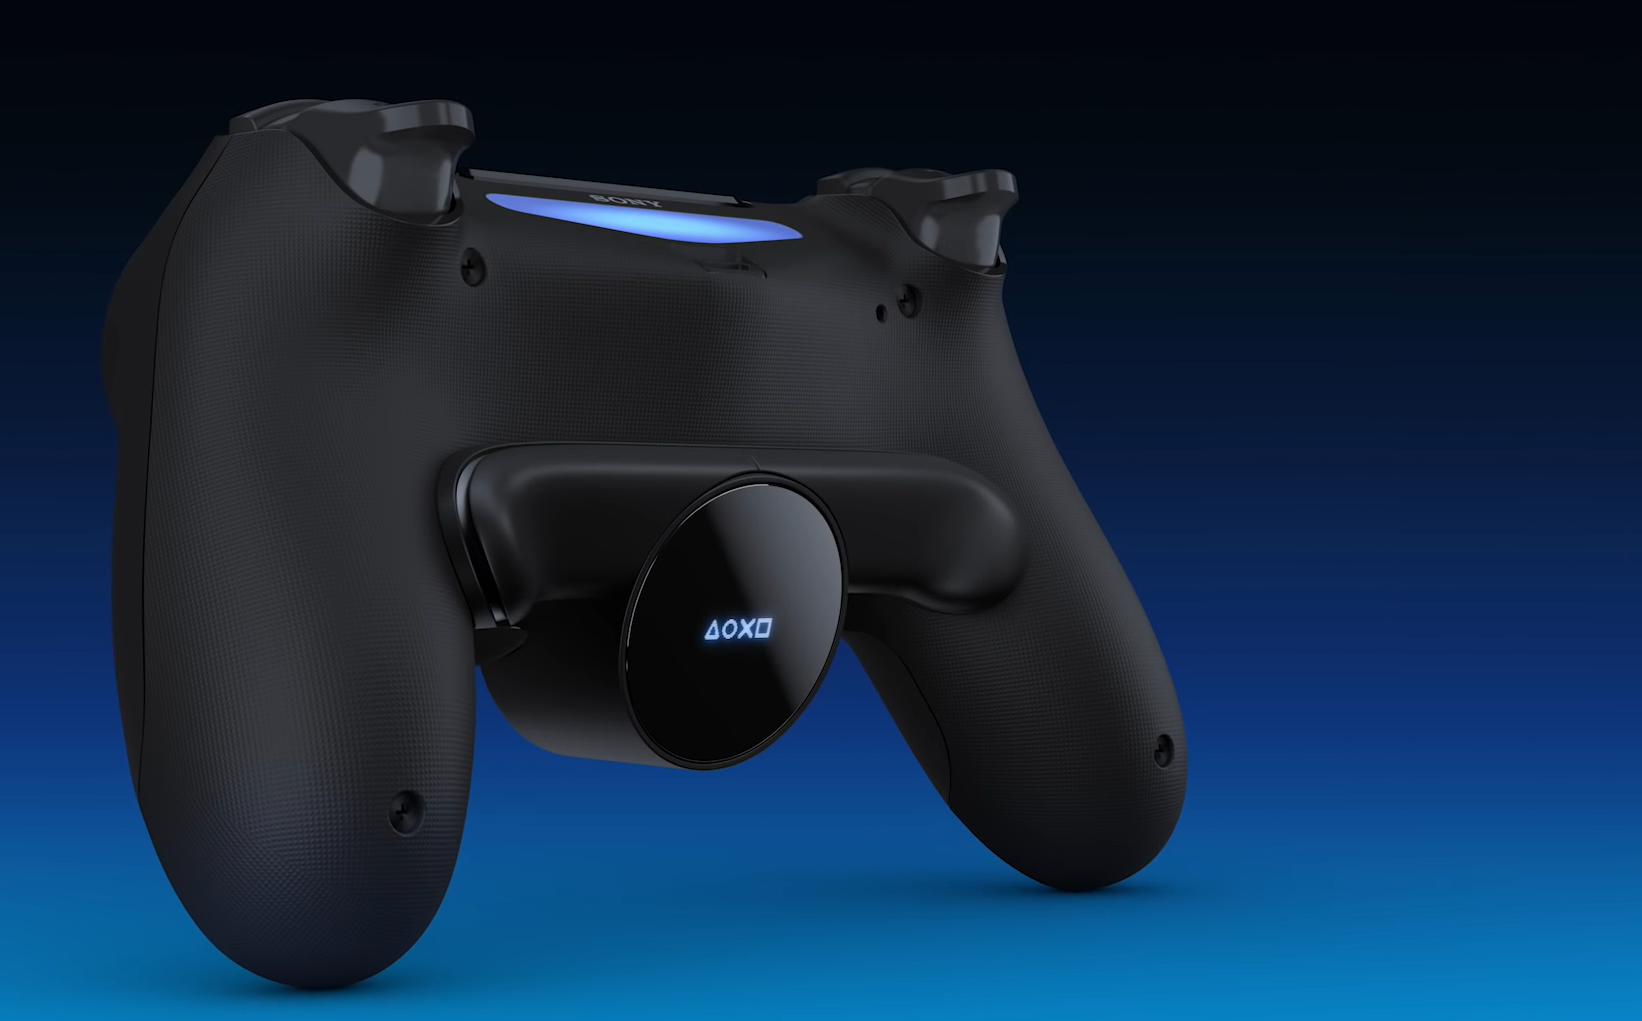 Nowe życie DUALSHOCK 4: Sony wprowadziła rozszerzenie kontrolera PlayStation 4 za 30 $